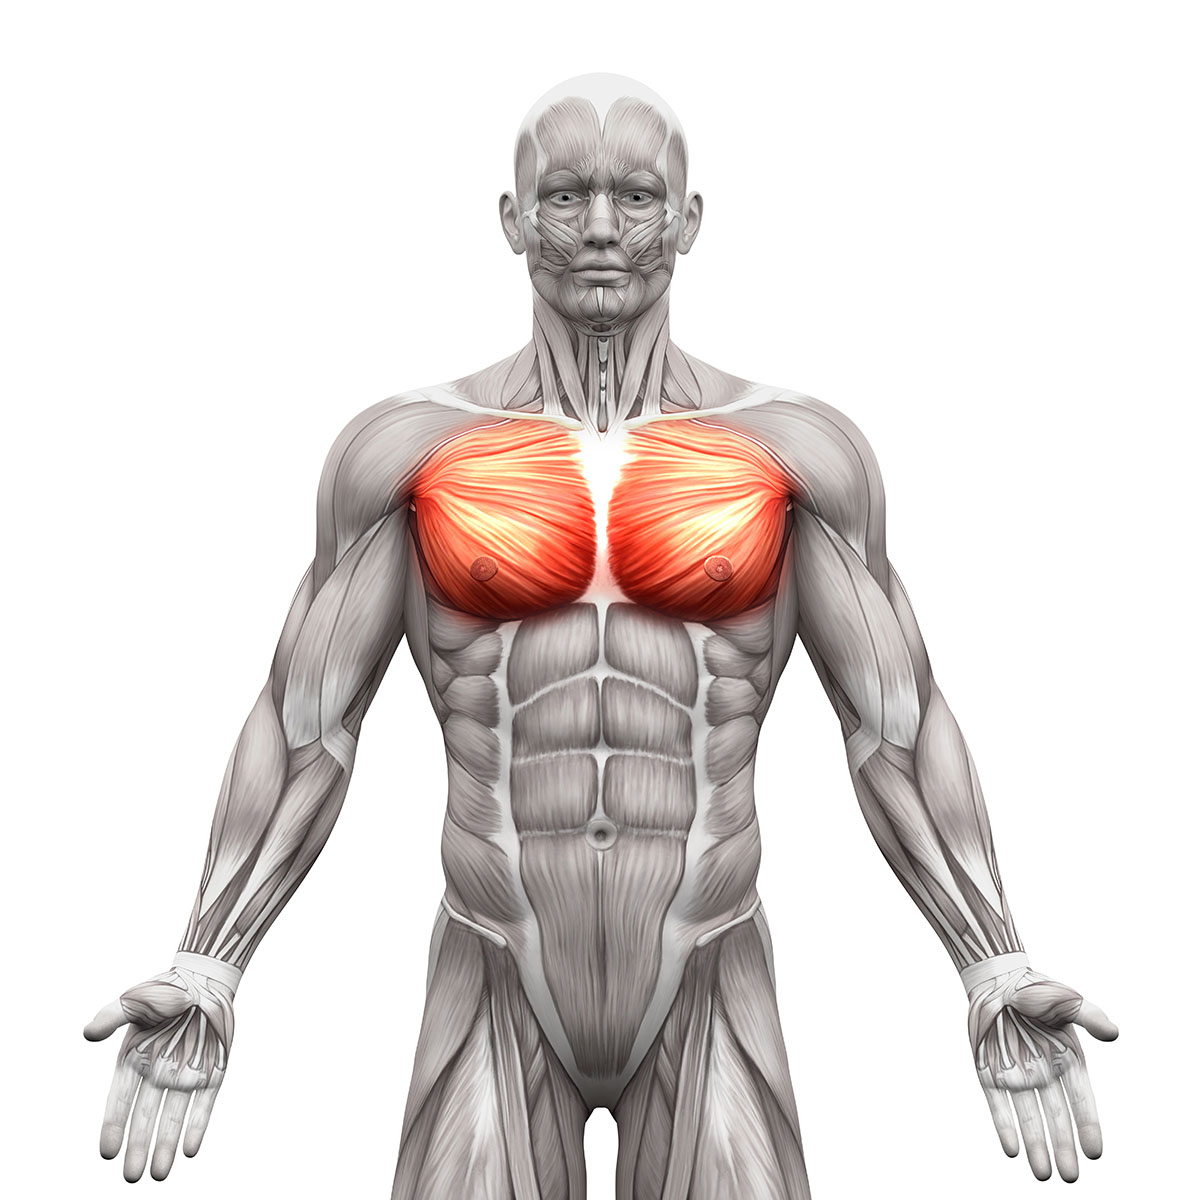 Brustmuskeln - Grosser und Kleiner Brustmuskel - Anatomiemuskeln iso